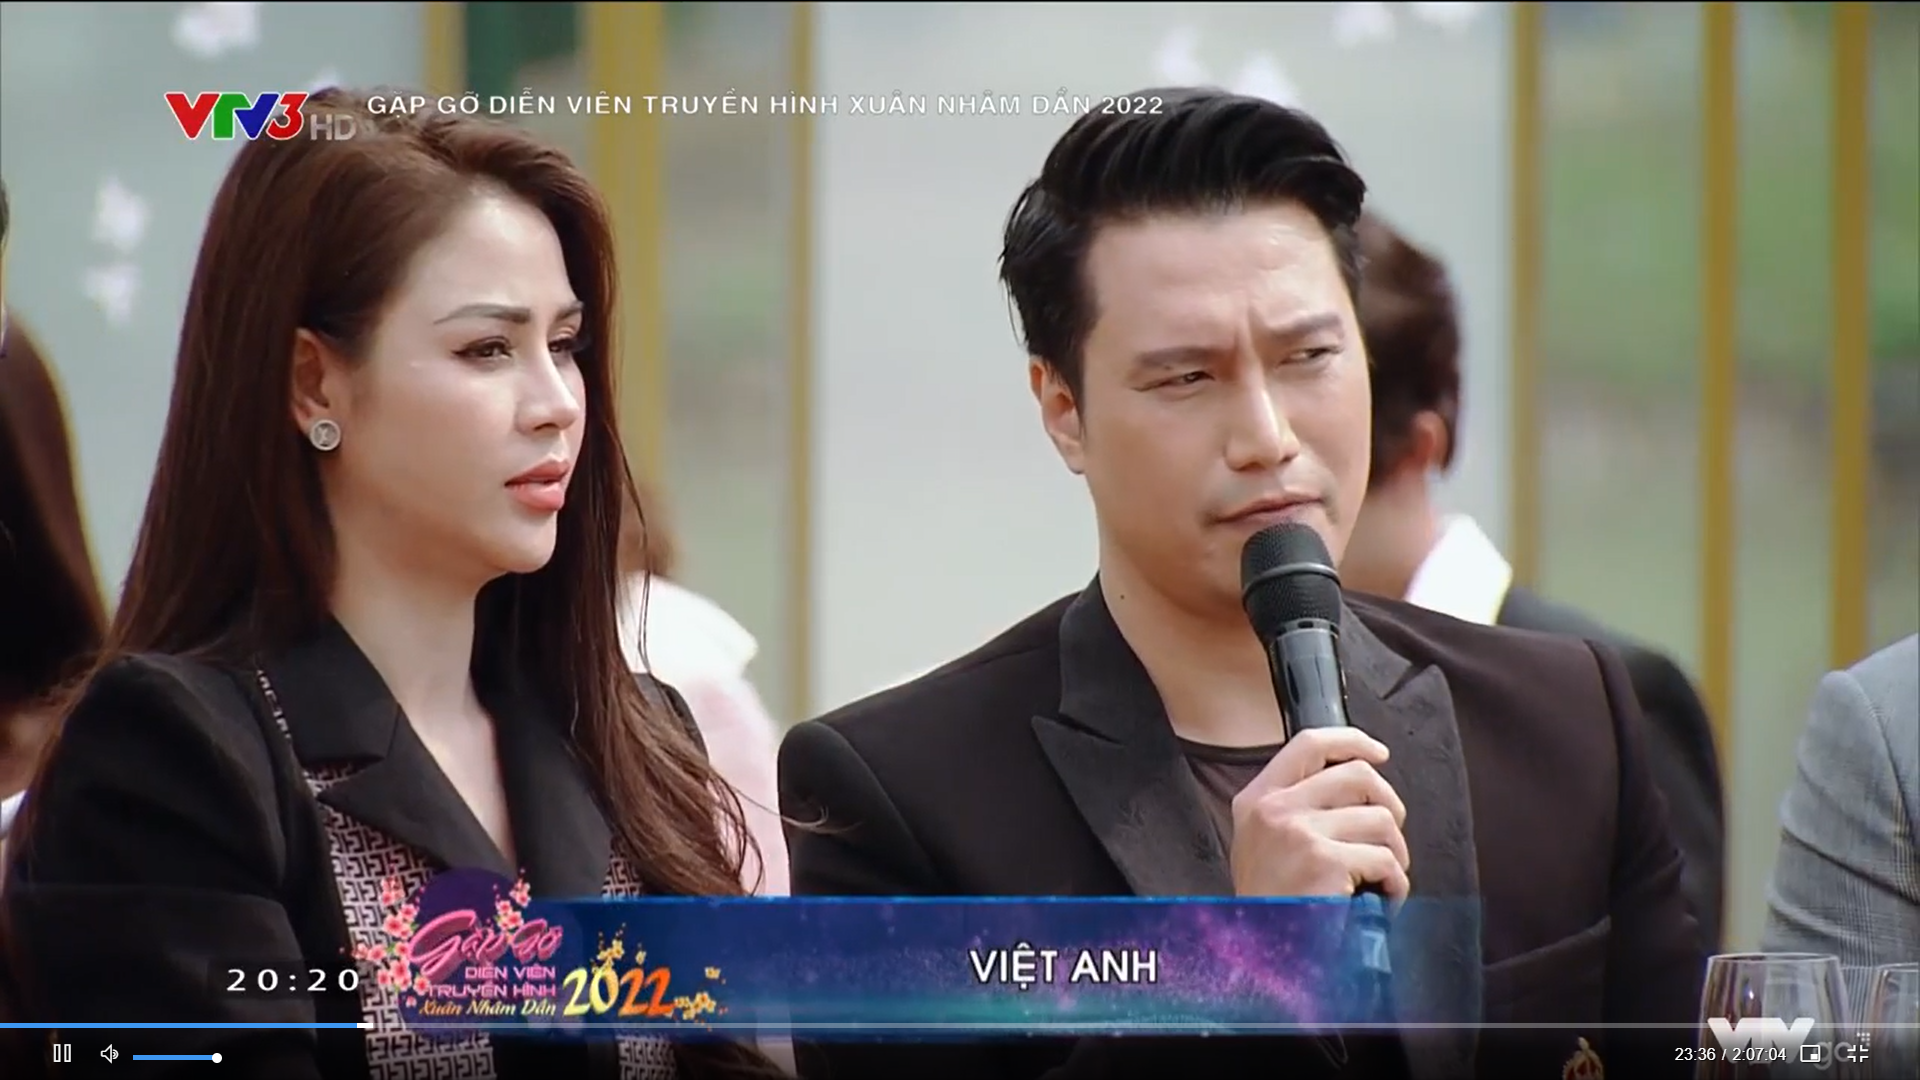 Gặp gỡ diễn viên truyền hình 2022: Dàn diễn viên bật mí nguyên nhân giúp phim Việt tỏa sáng trong đại dịch - Ảnh 3.